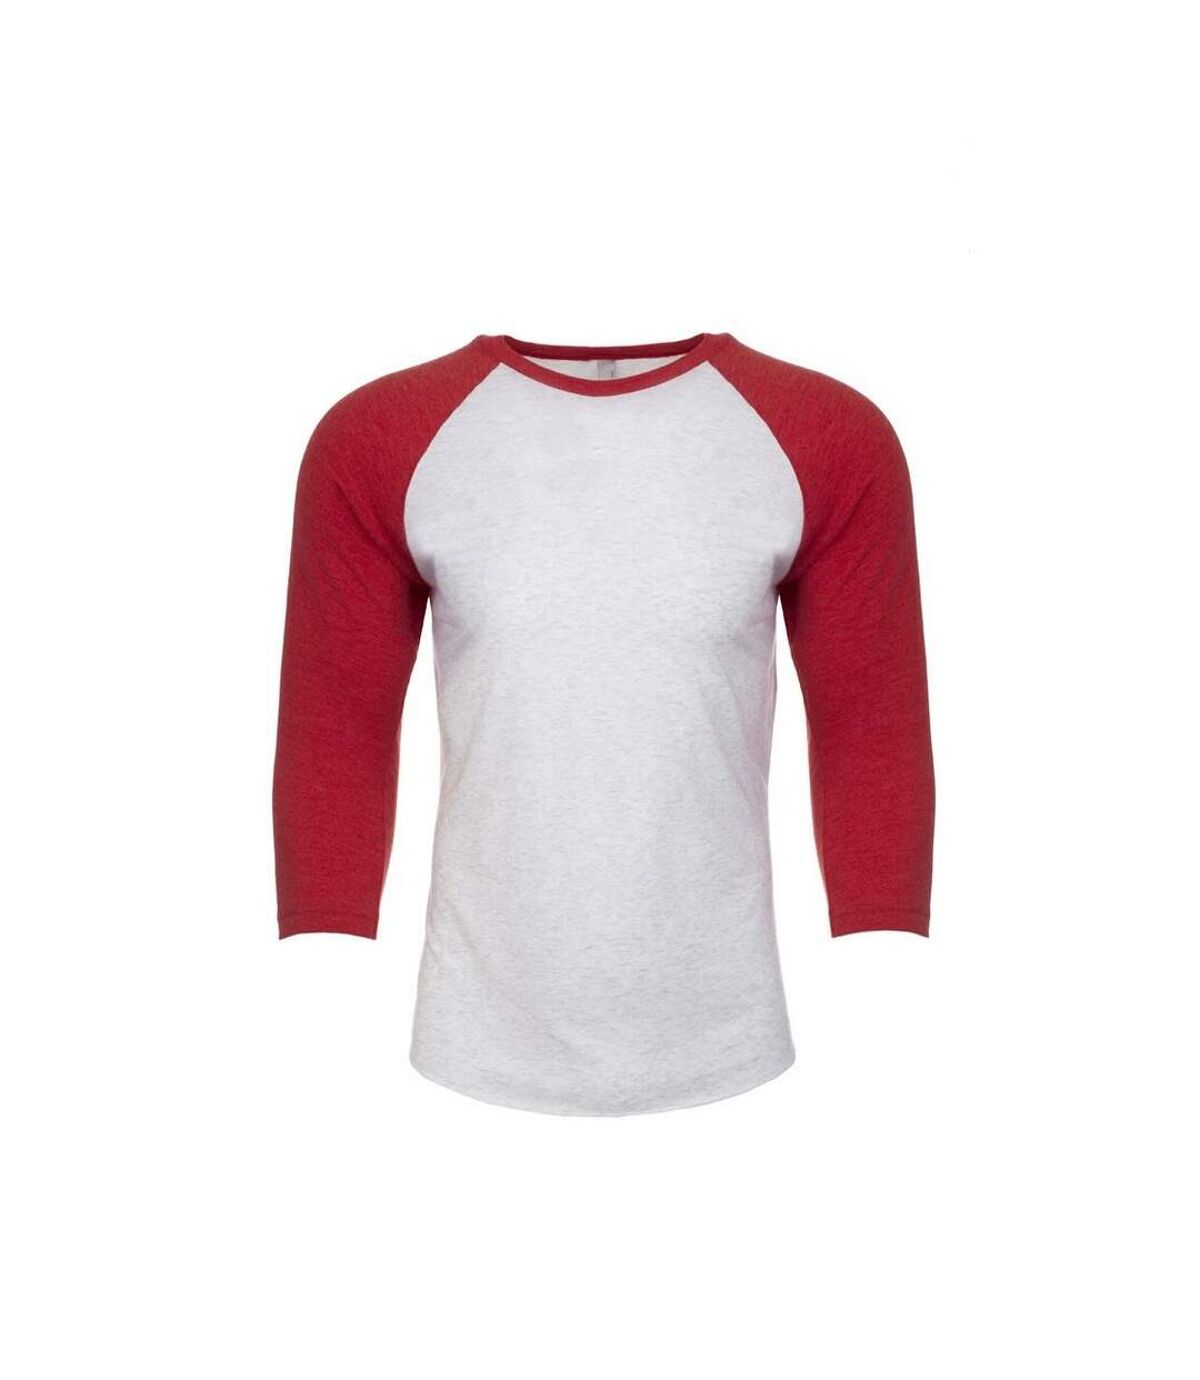 Next Level Adultes T-Shirt raglan unisexe à manches 3/4 en tri-blend (Rouge vintage/blanc cuir) - UTPC3484